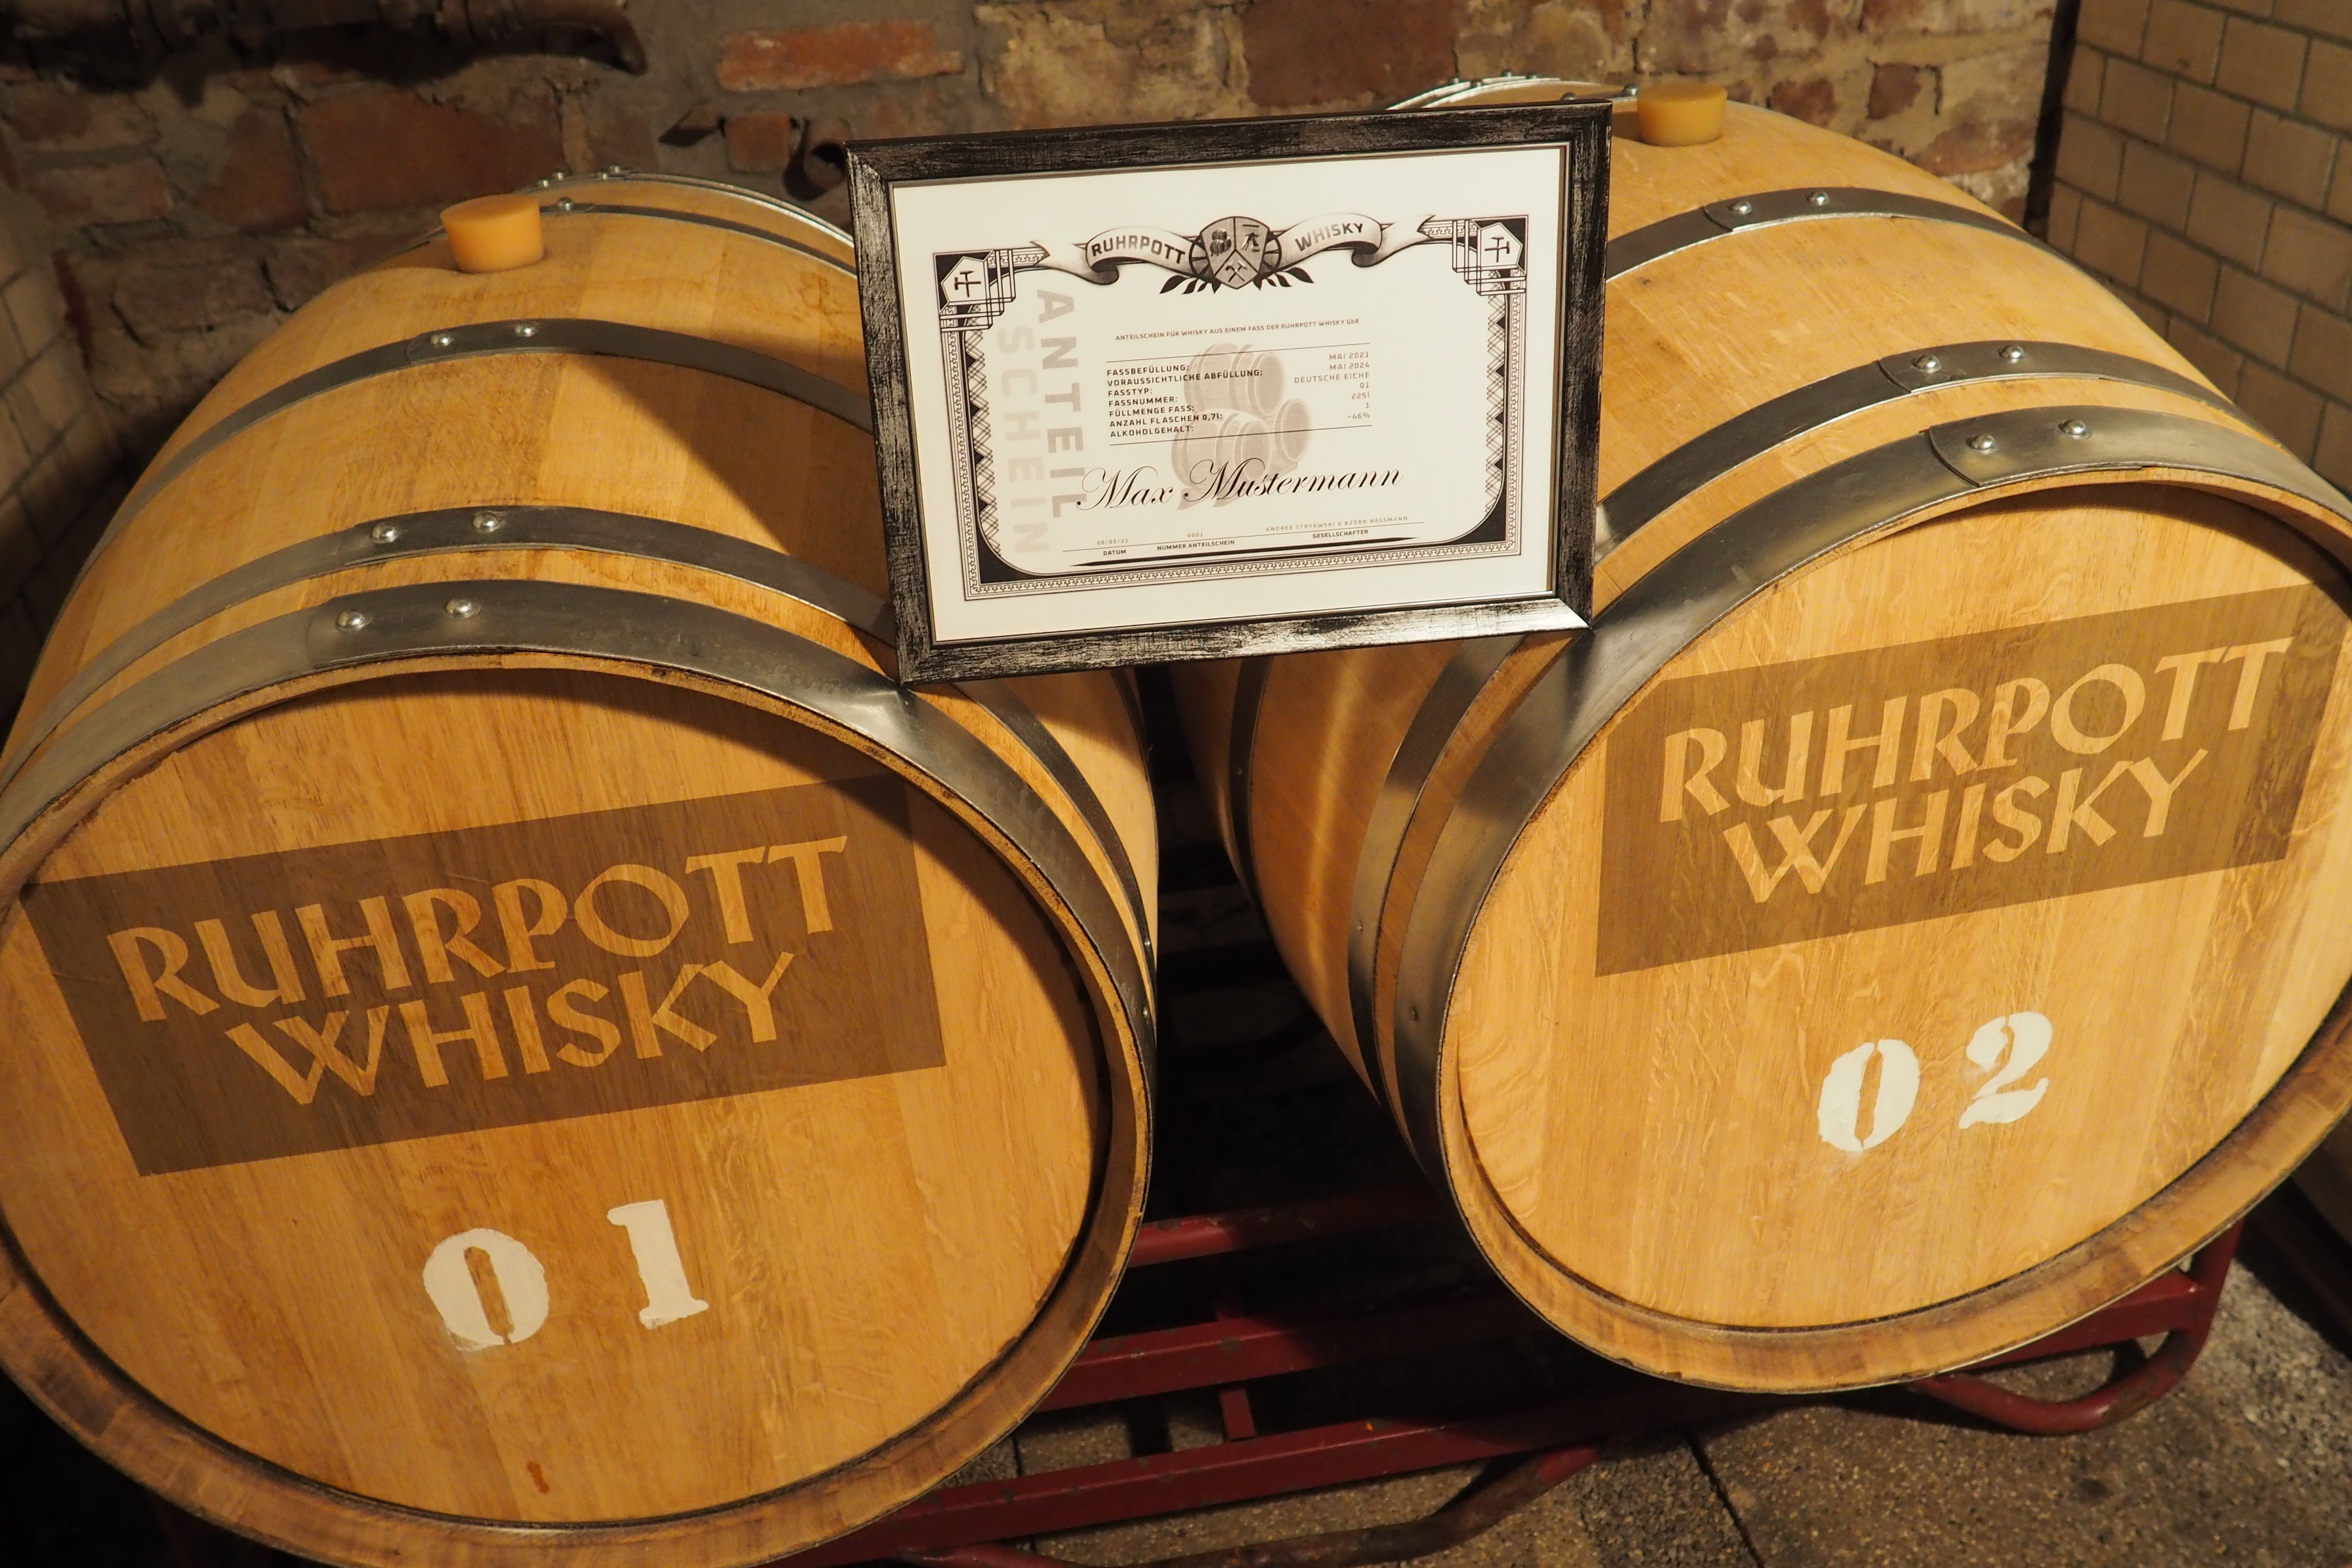 Ruhrpott Whisky - Bild eines Anteilscheins aus für den Whisky "Schlägel & Eisen" auf den Fässern aus deutscher Eiche in denen der Whisky lagert. Das perfekte Geschenk!